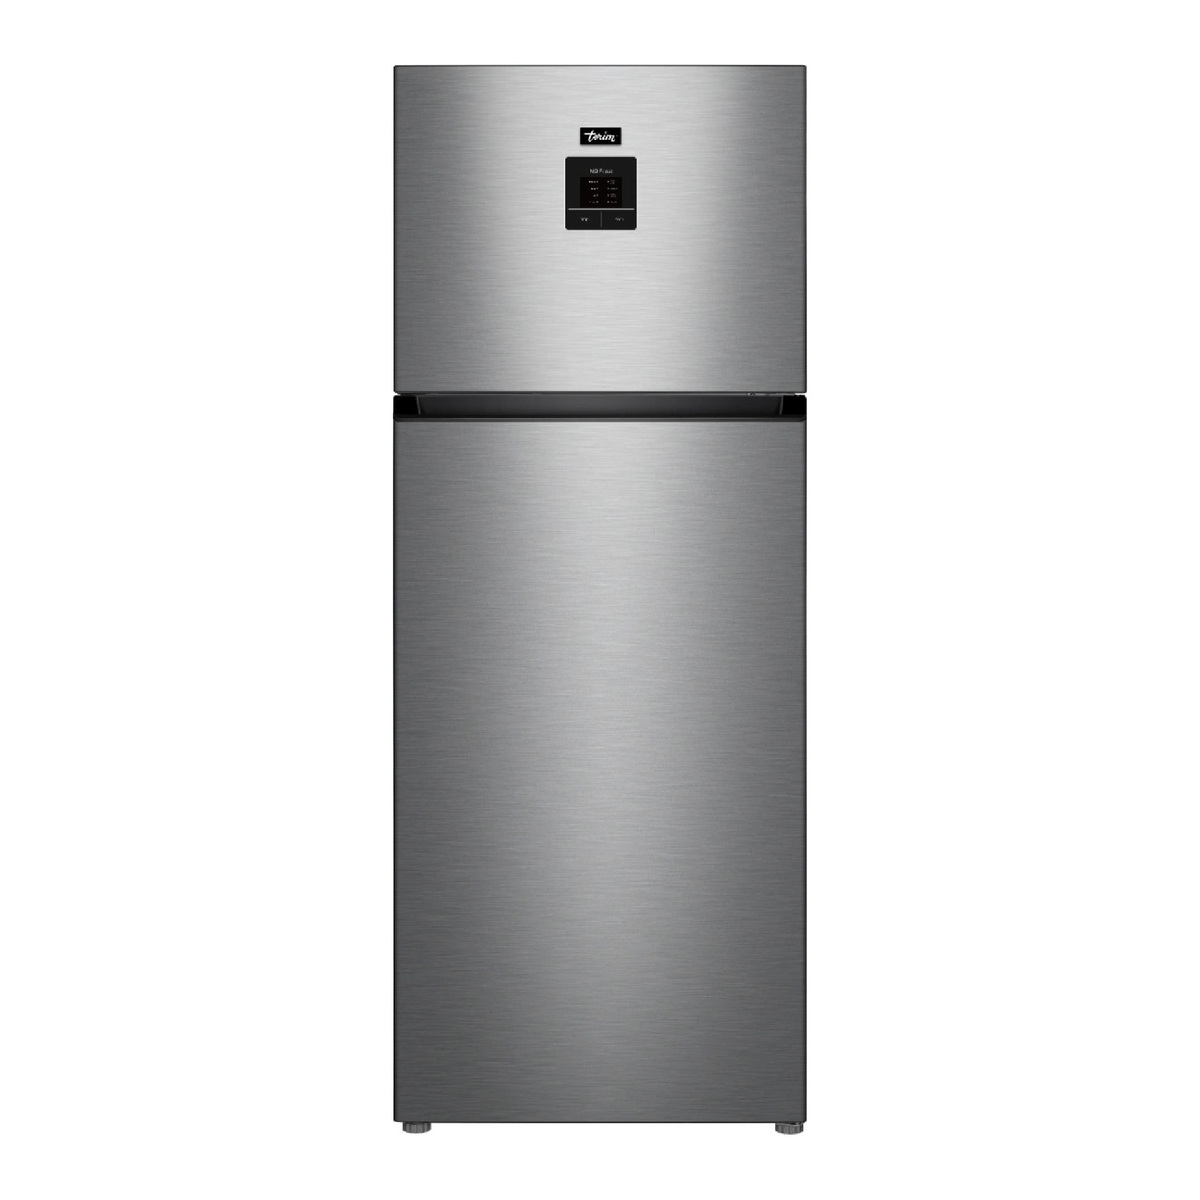 Terim Top Freezer Double Door Refrigerator, 600 L, Stainless Steel, TERR600SST